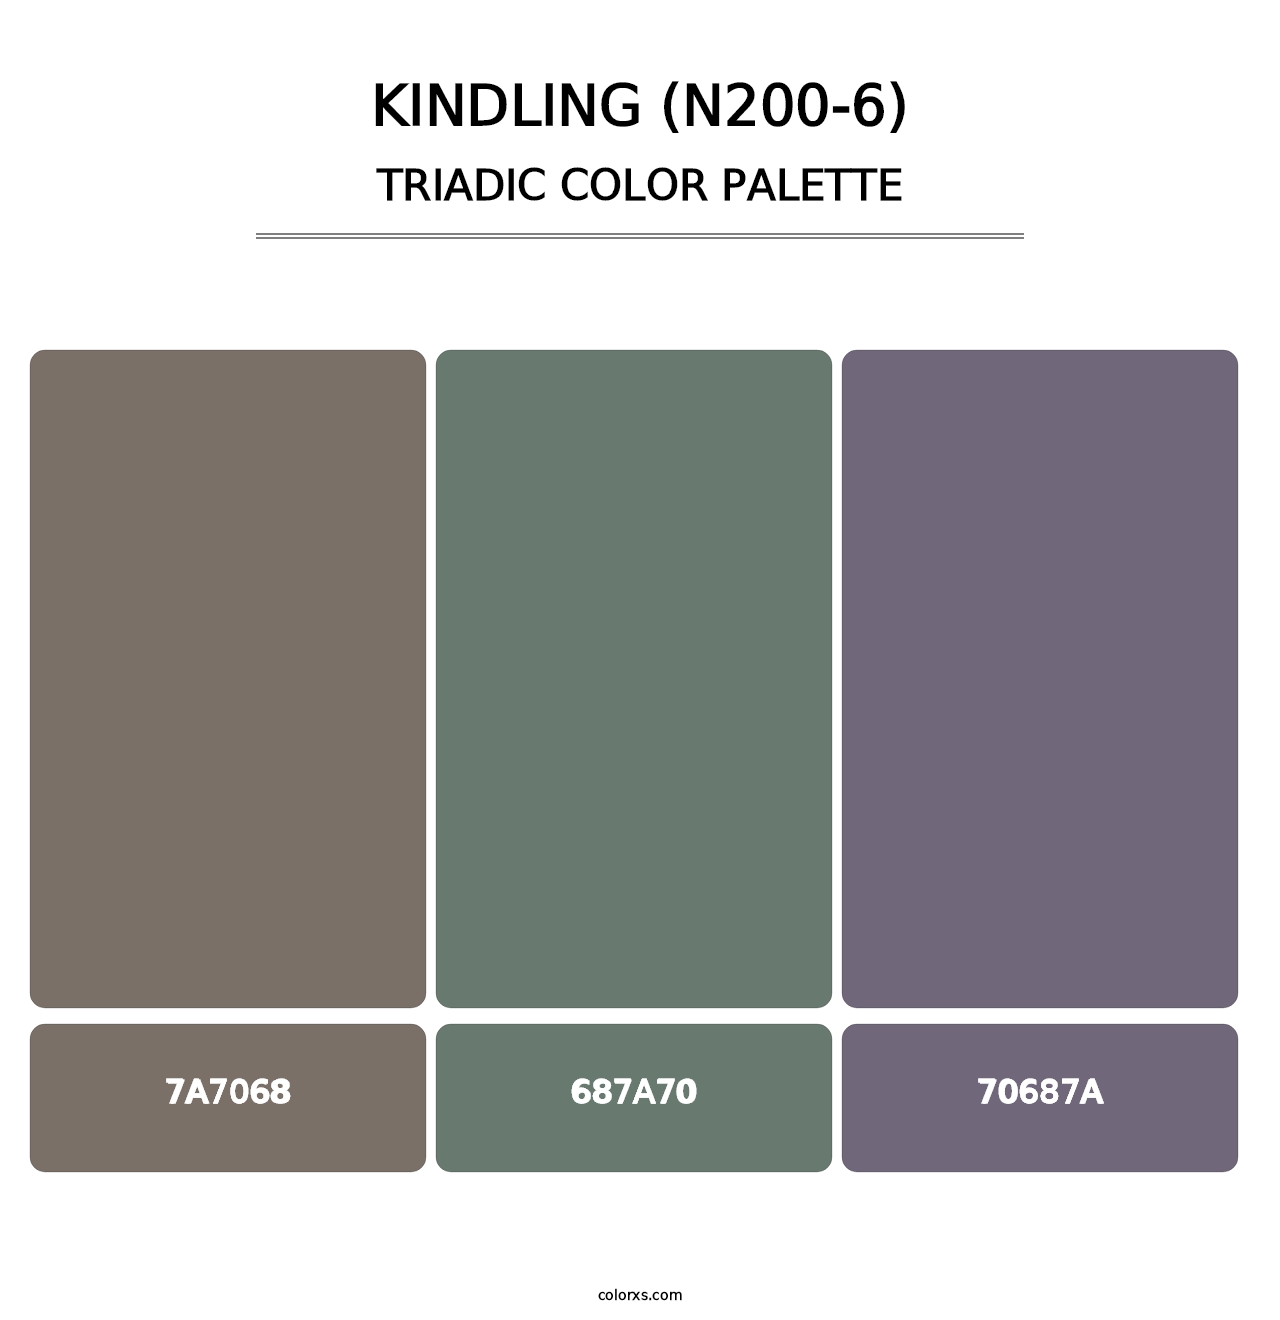 Kindling (N200-6) - Triadic Color Palette